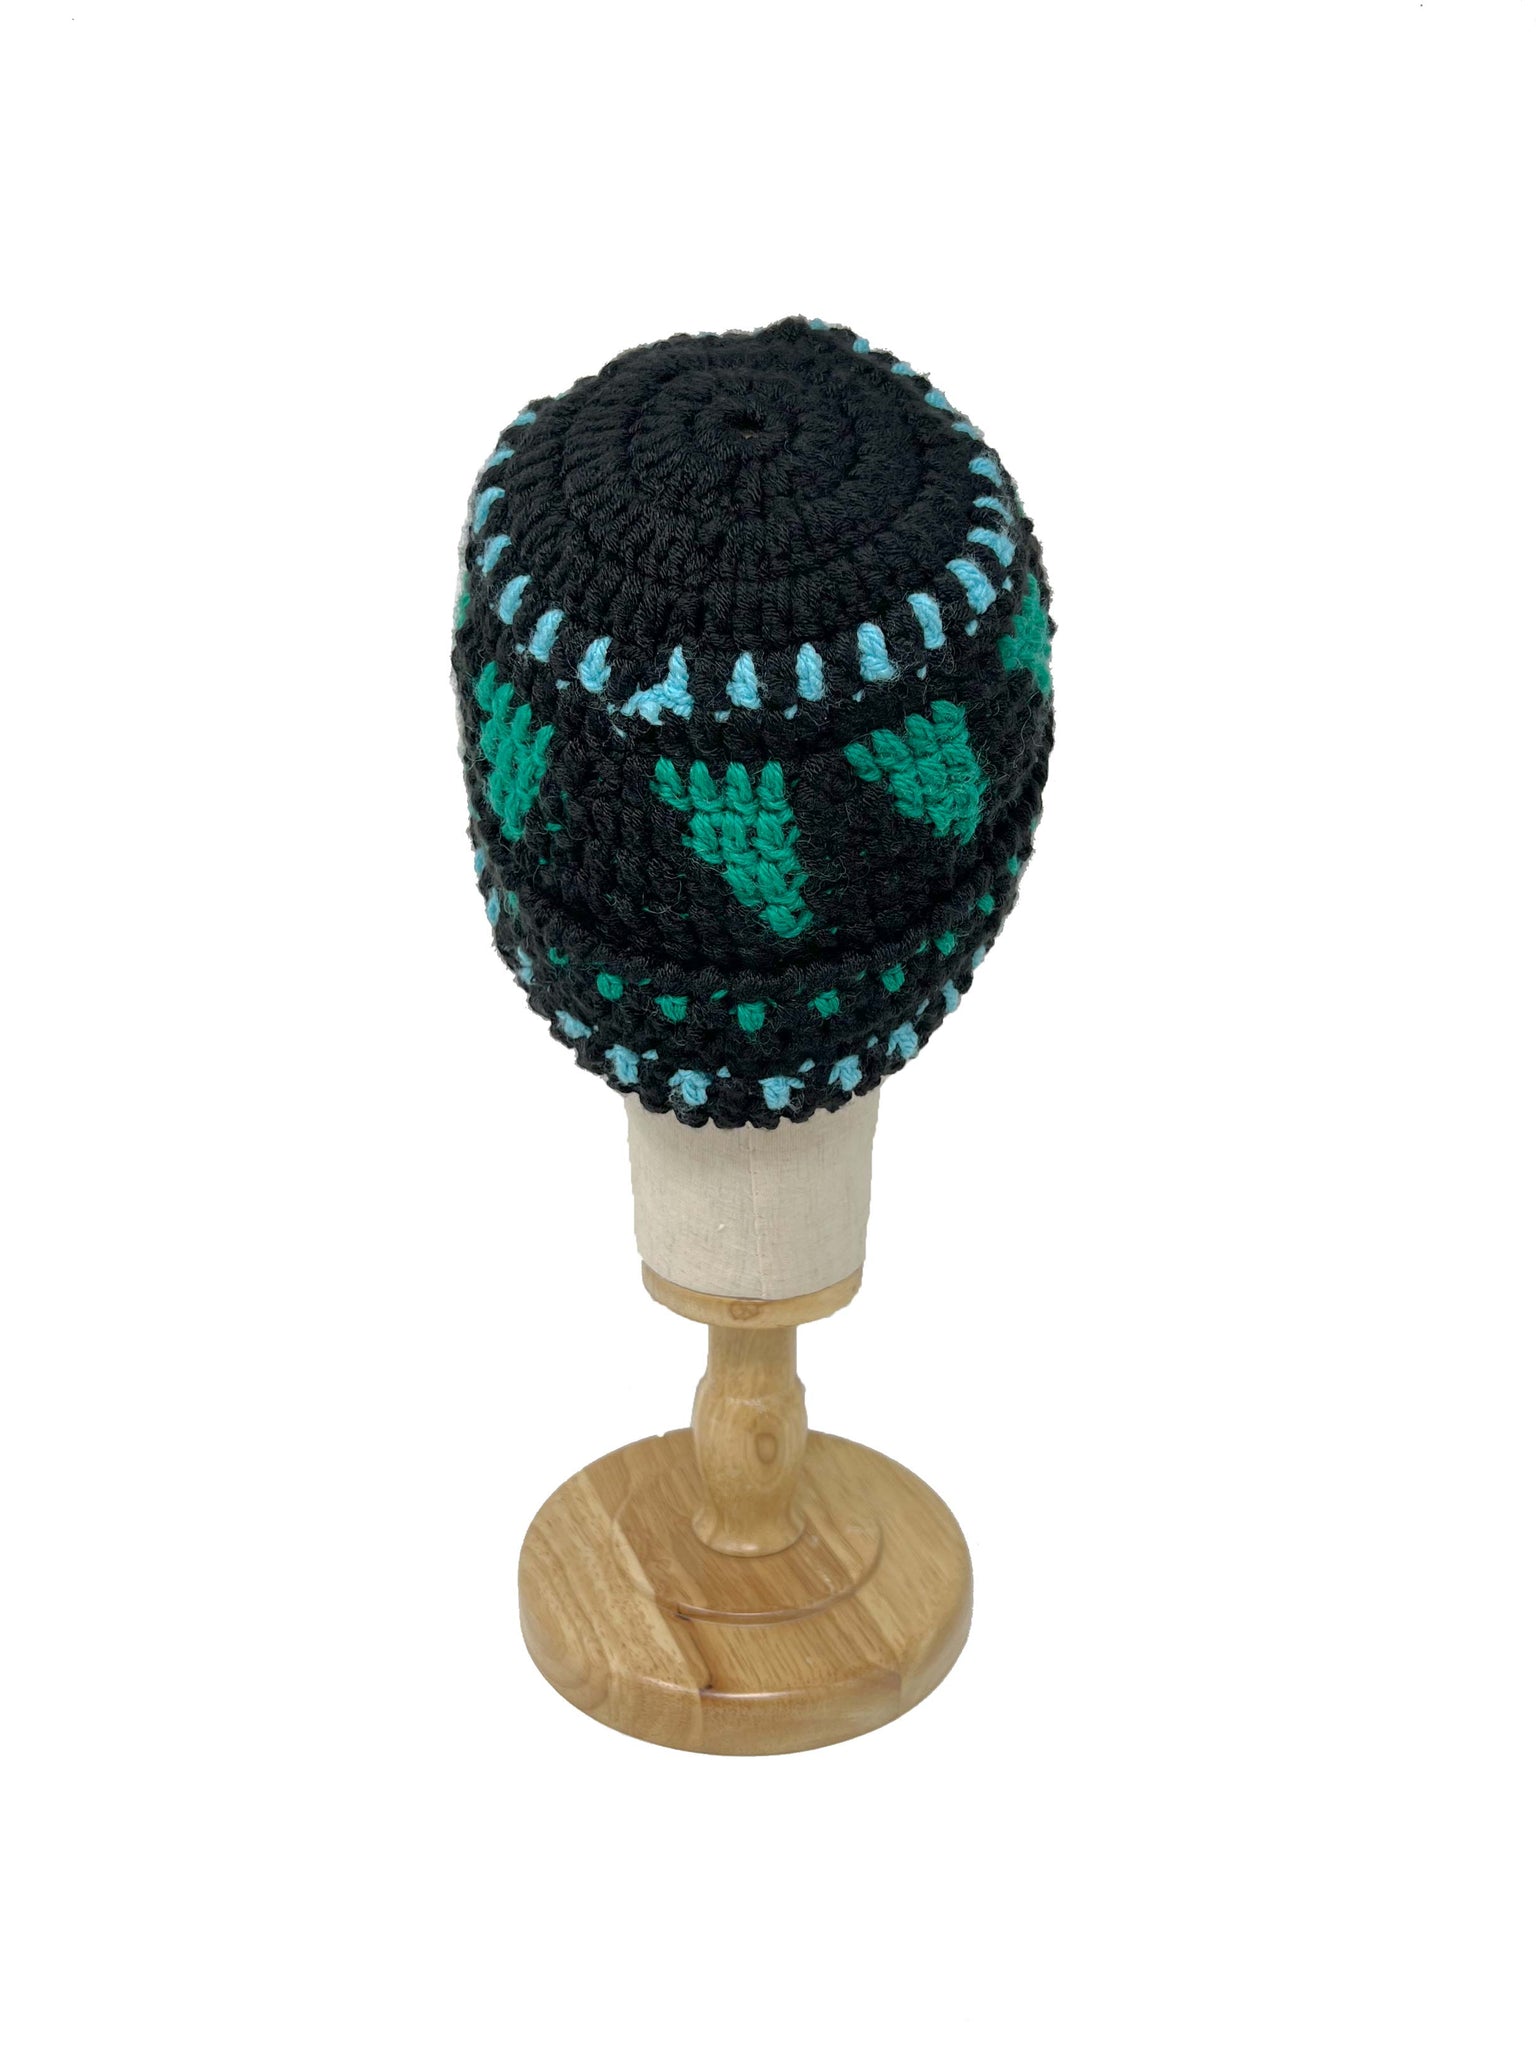 Black emerald green and light blue wool crochet beanie